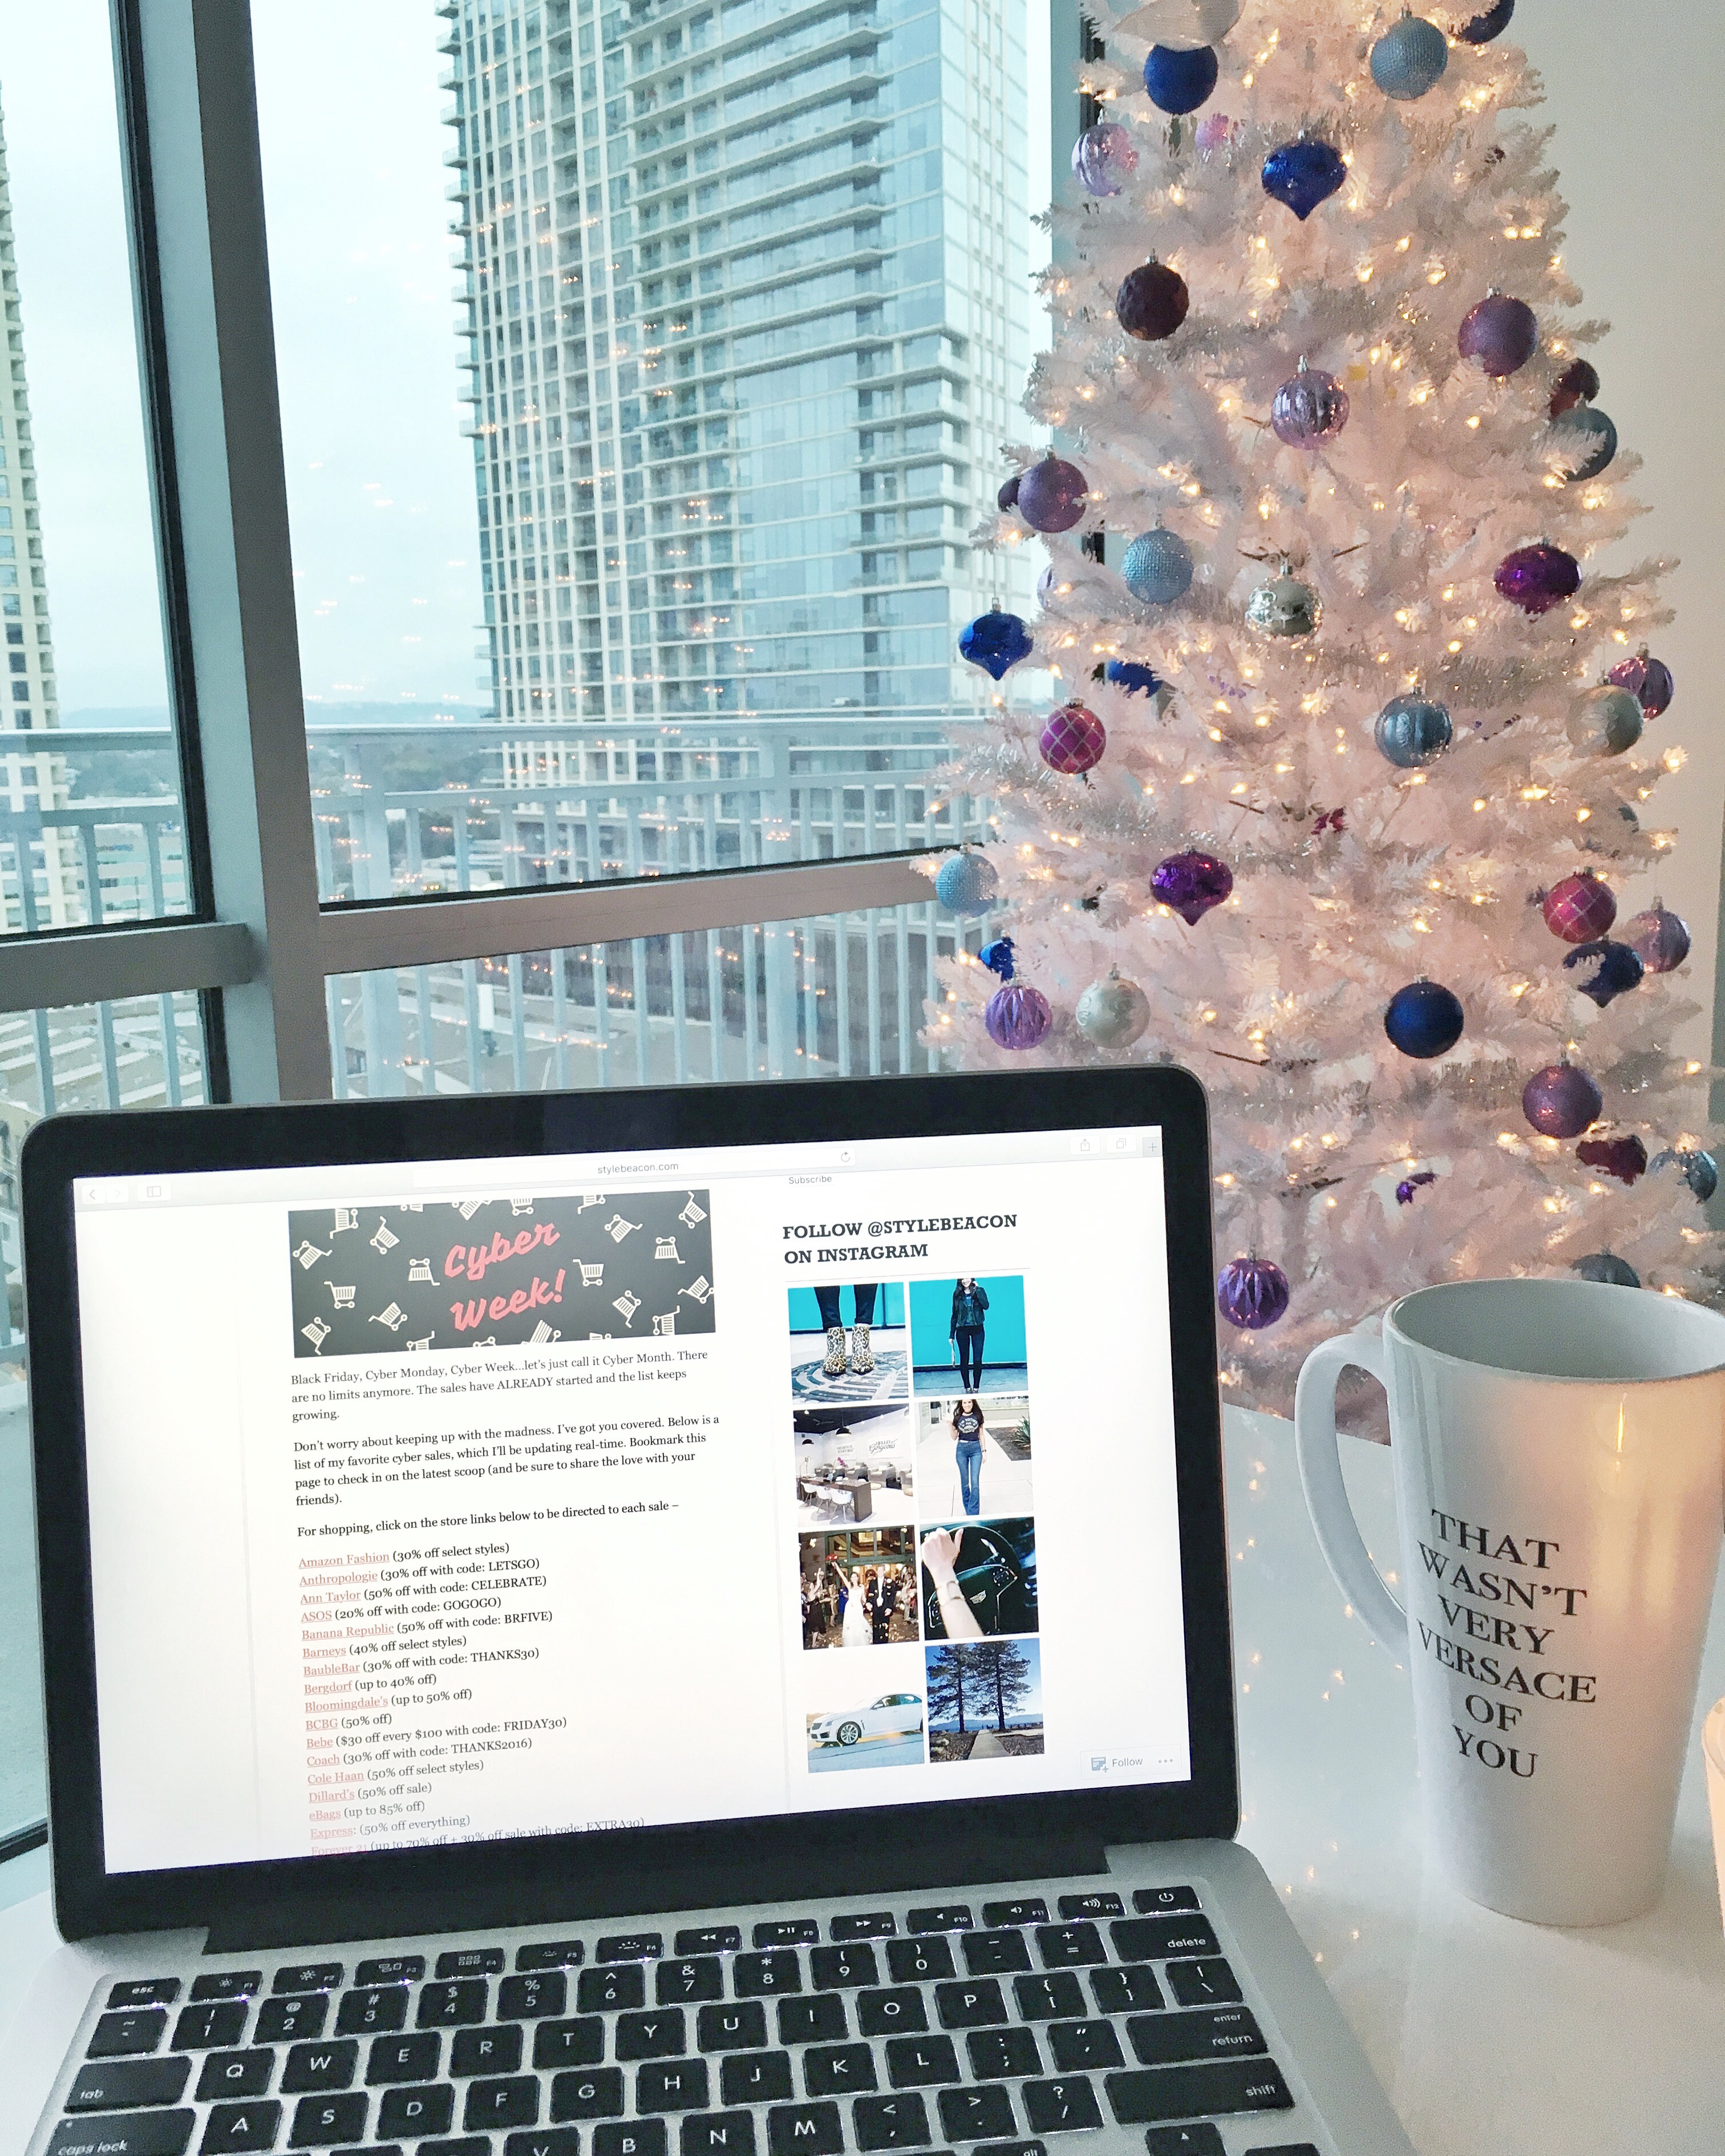 coffee-mug-mac-laptop-white-christmas-tree-city